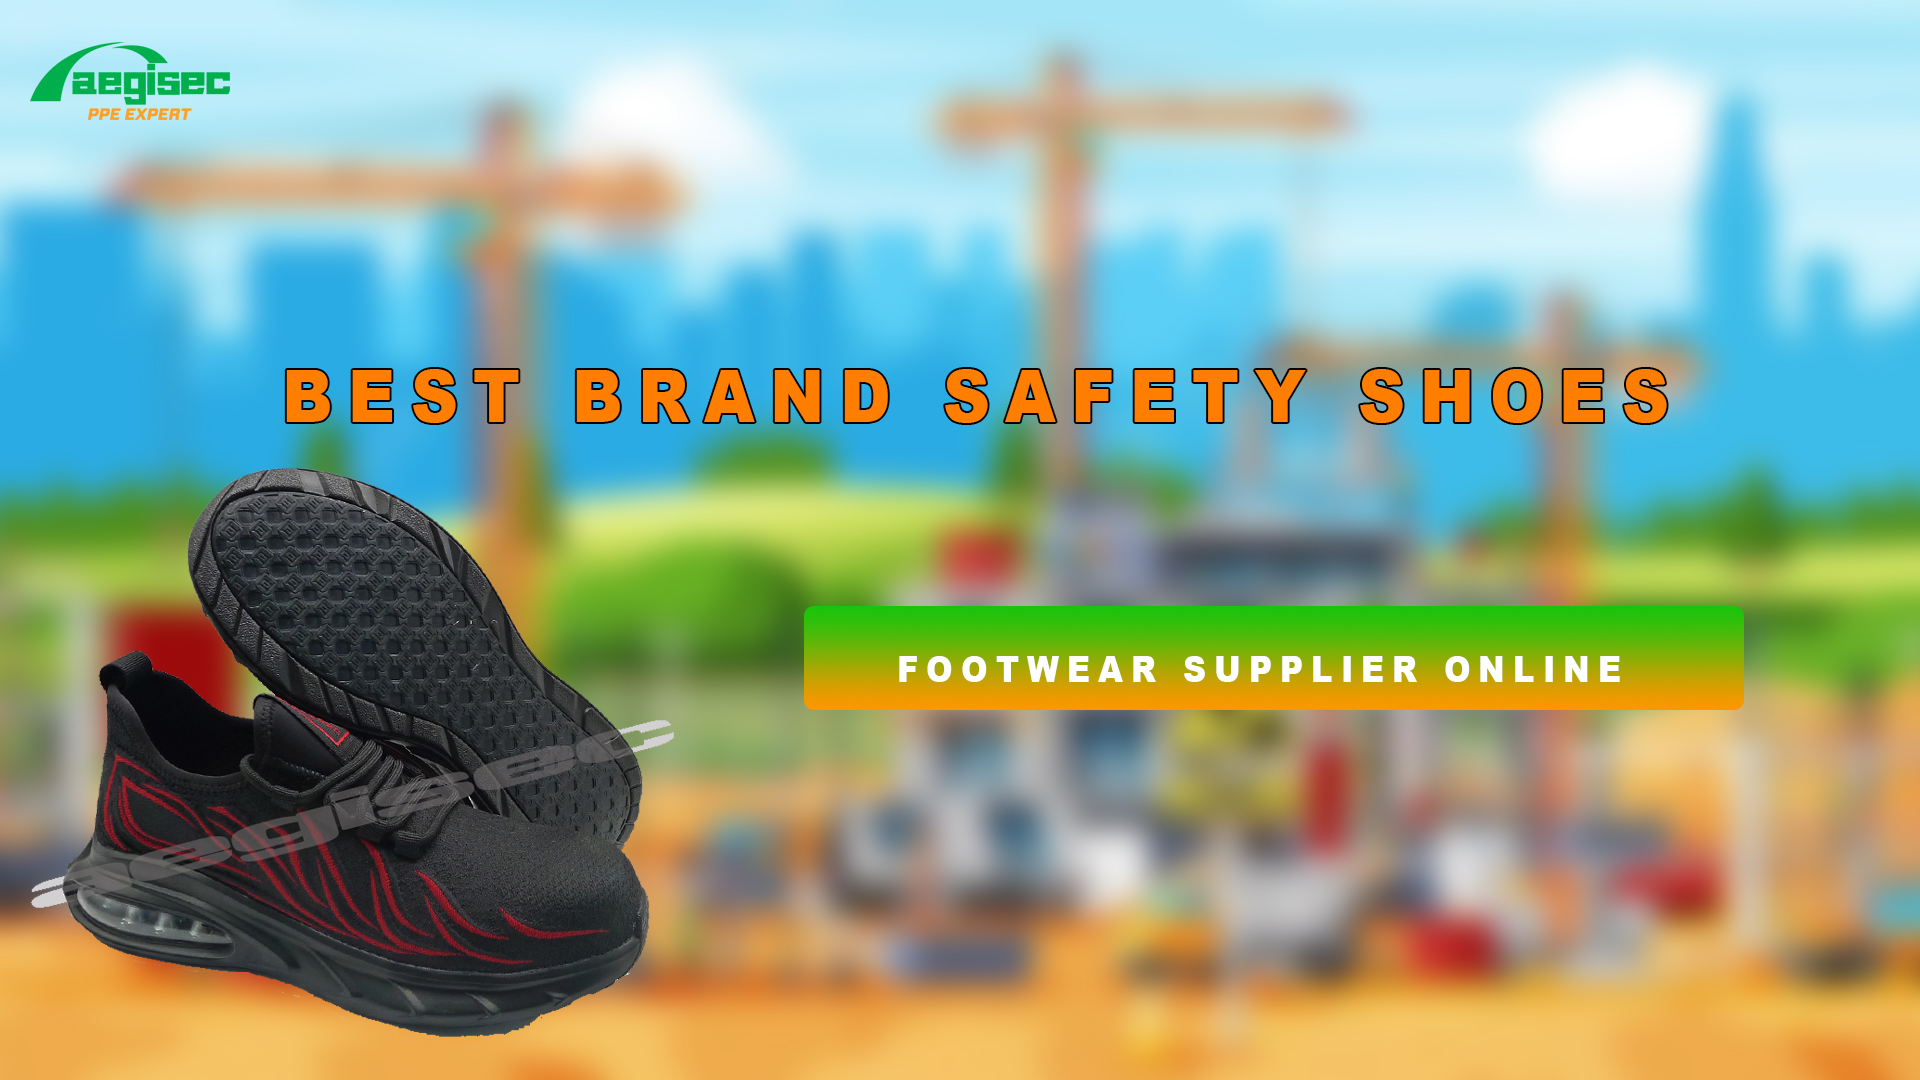 Quelle est la meilleure marque de chaussures de sécurité